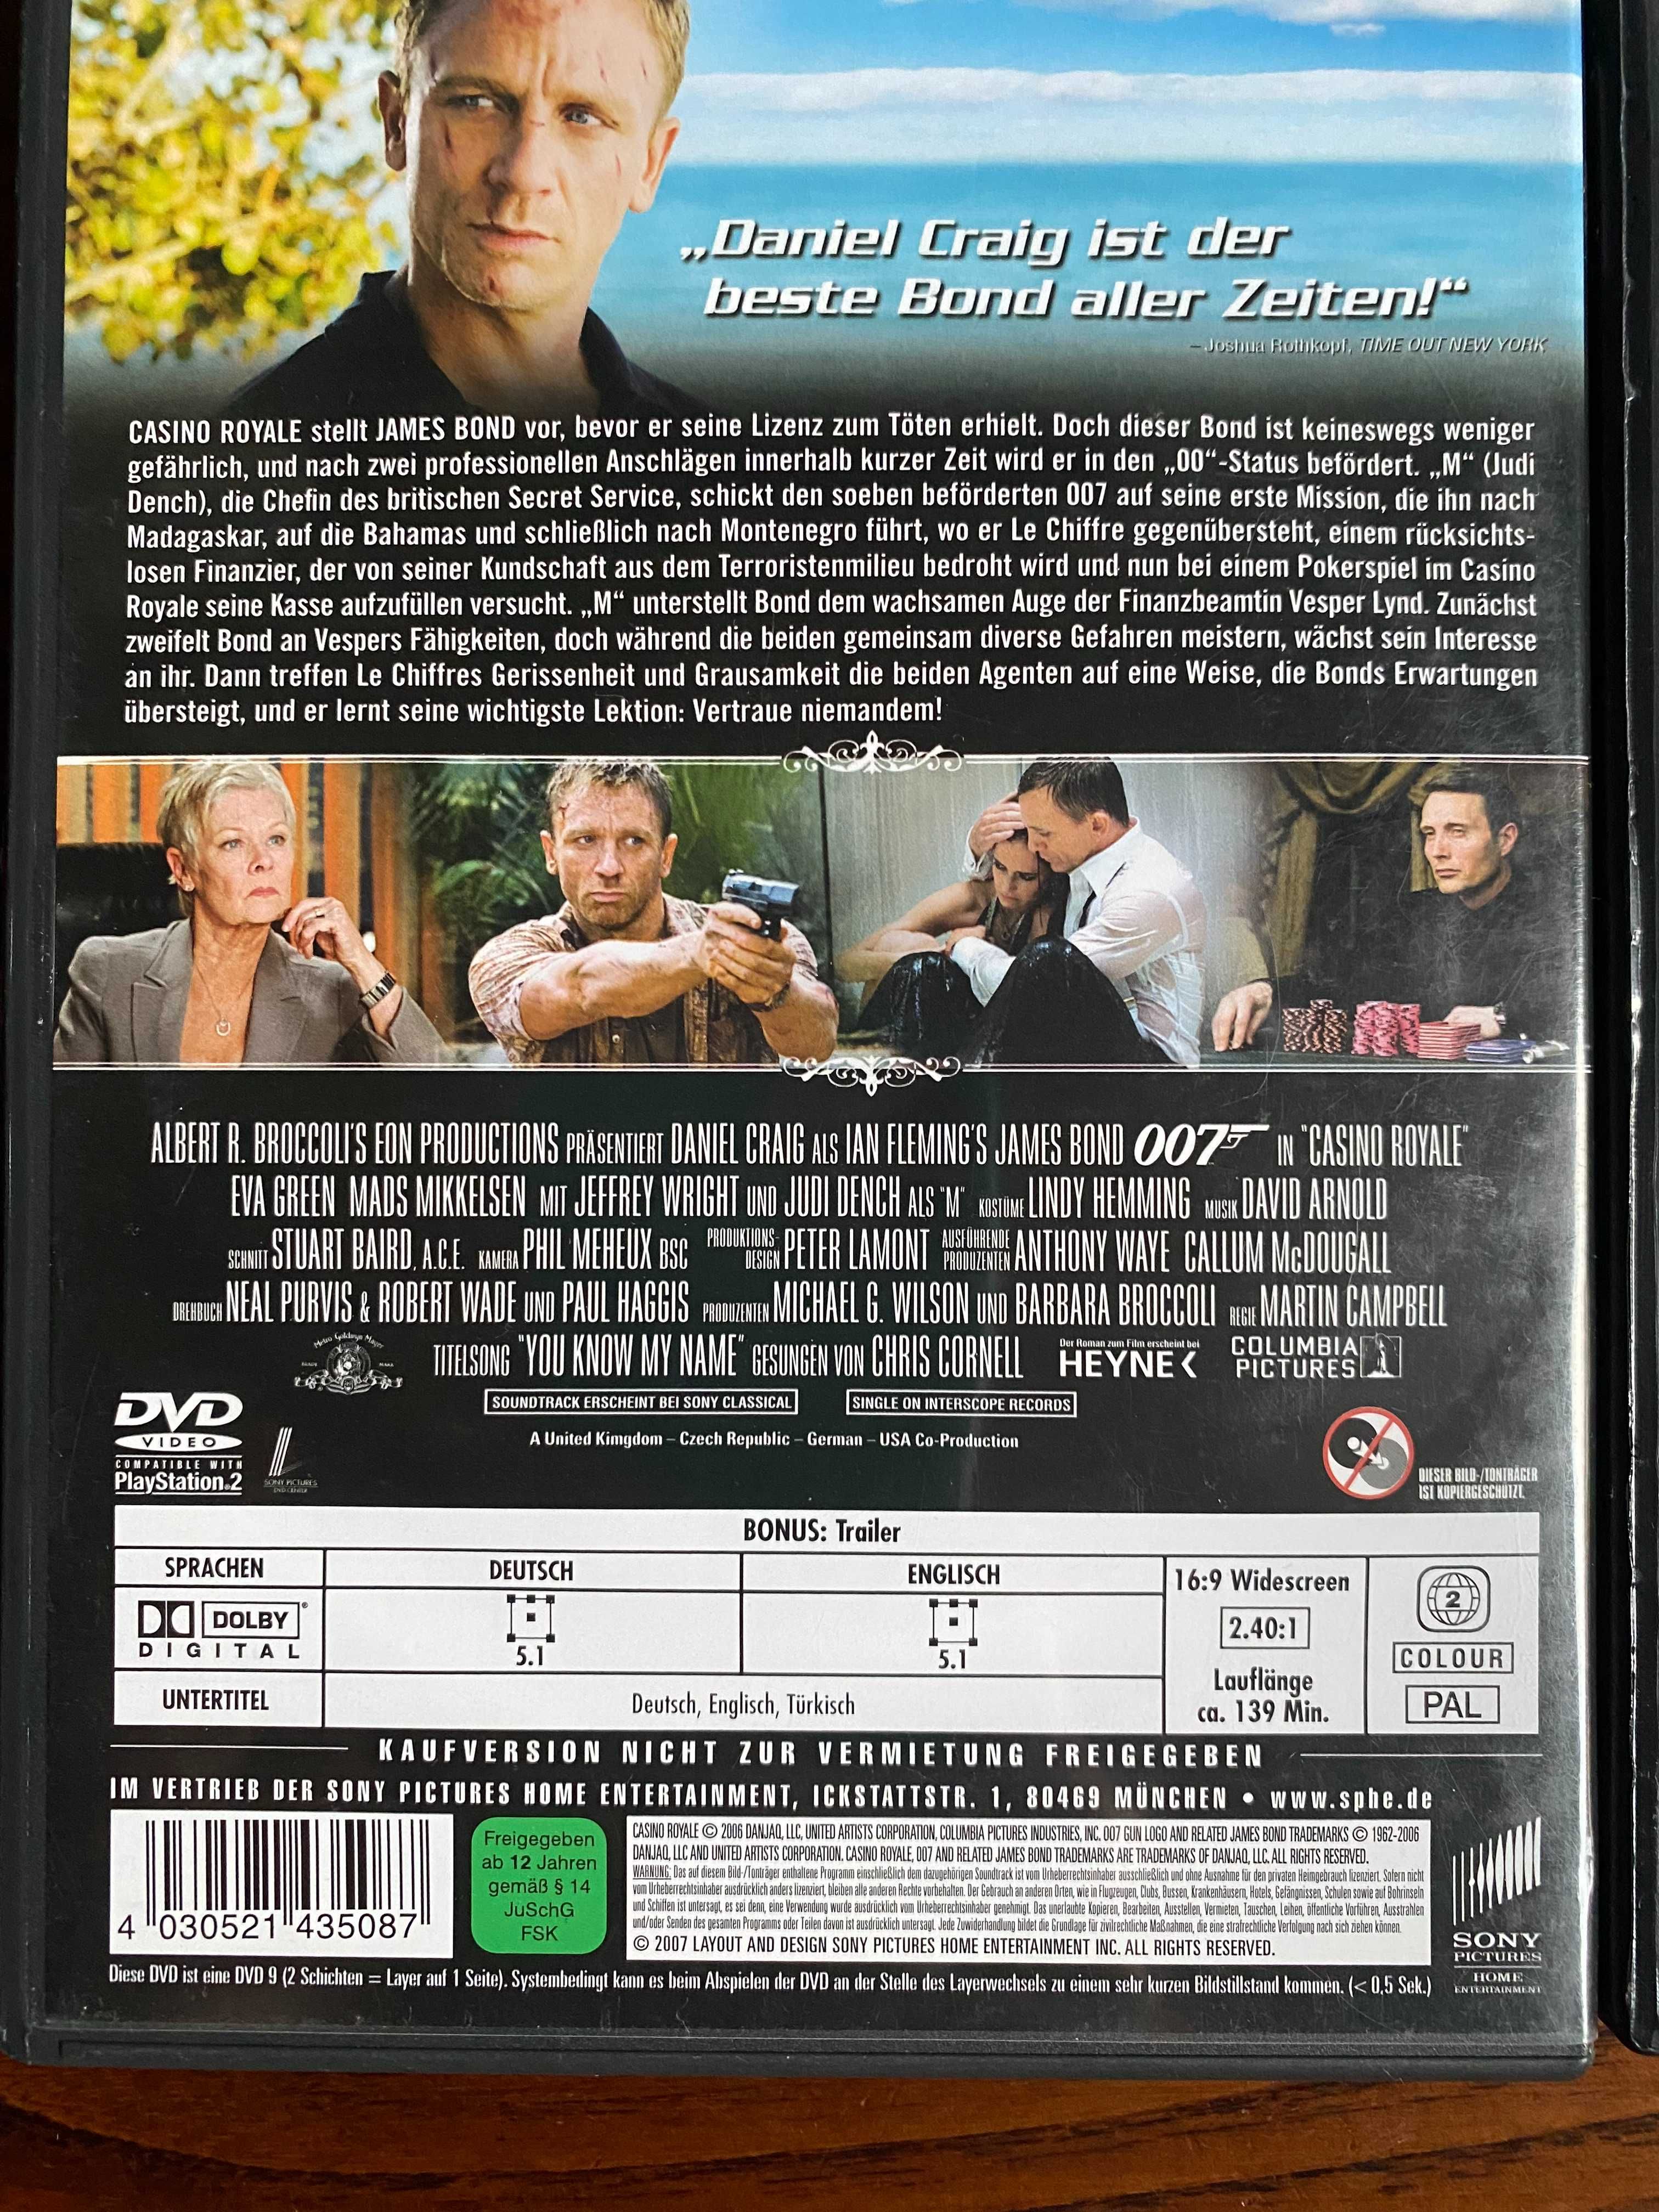 Płyta DVD film 007 Casino Royale trzy płyty Kraków